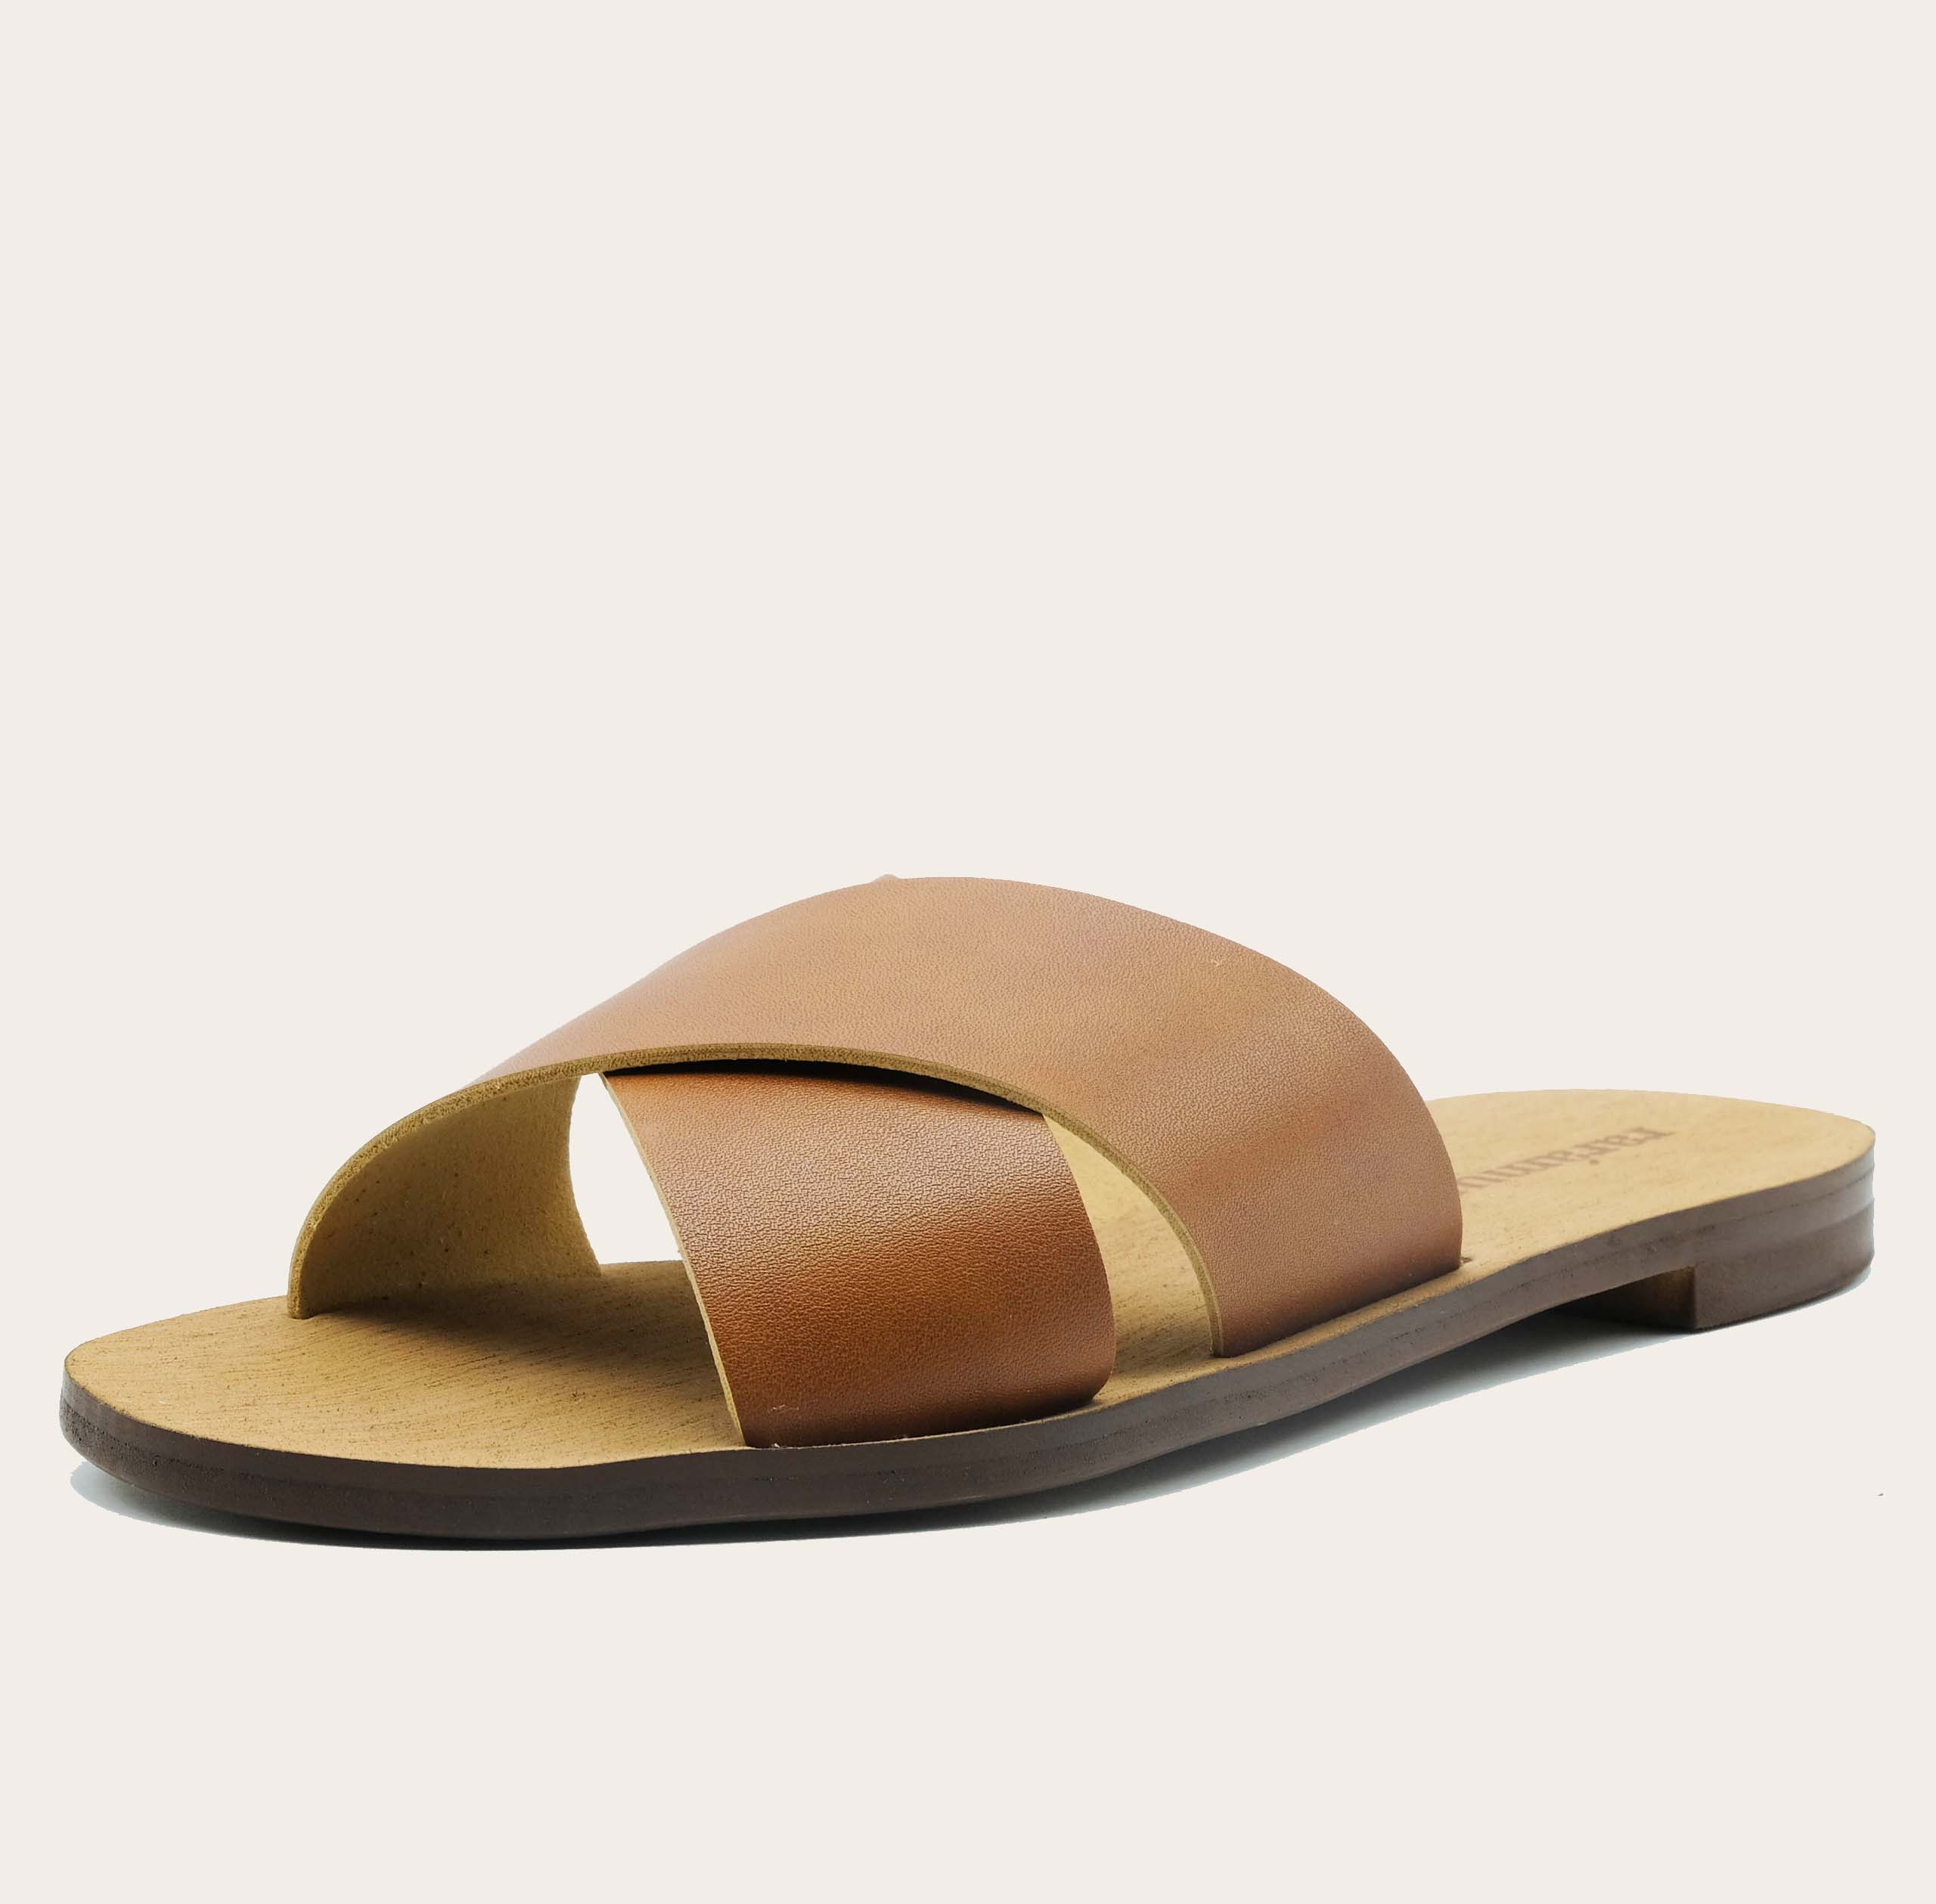 Palermo-schuin-beige_slides-sandals-women-shoes-travel-sandals-vegan-raramuri